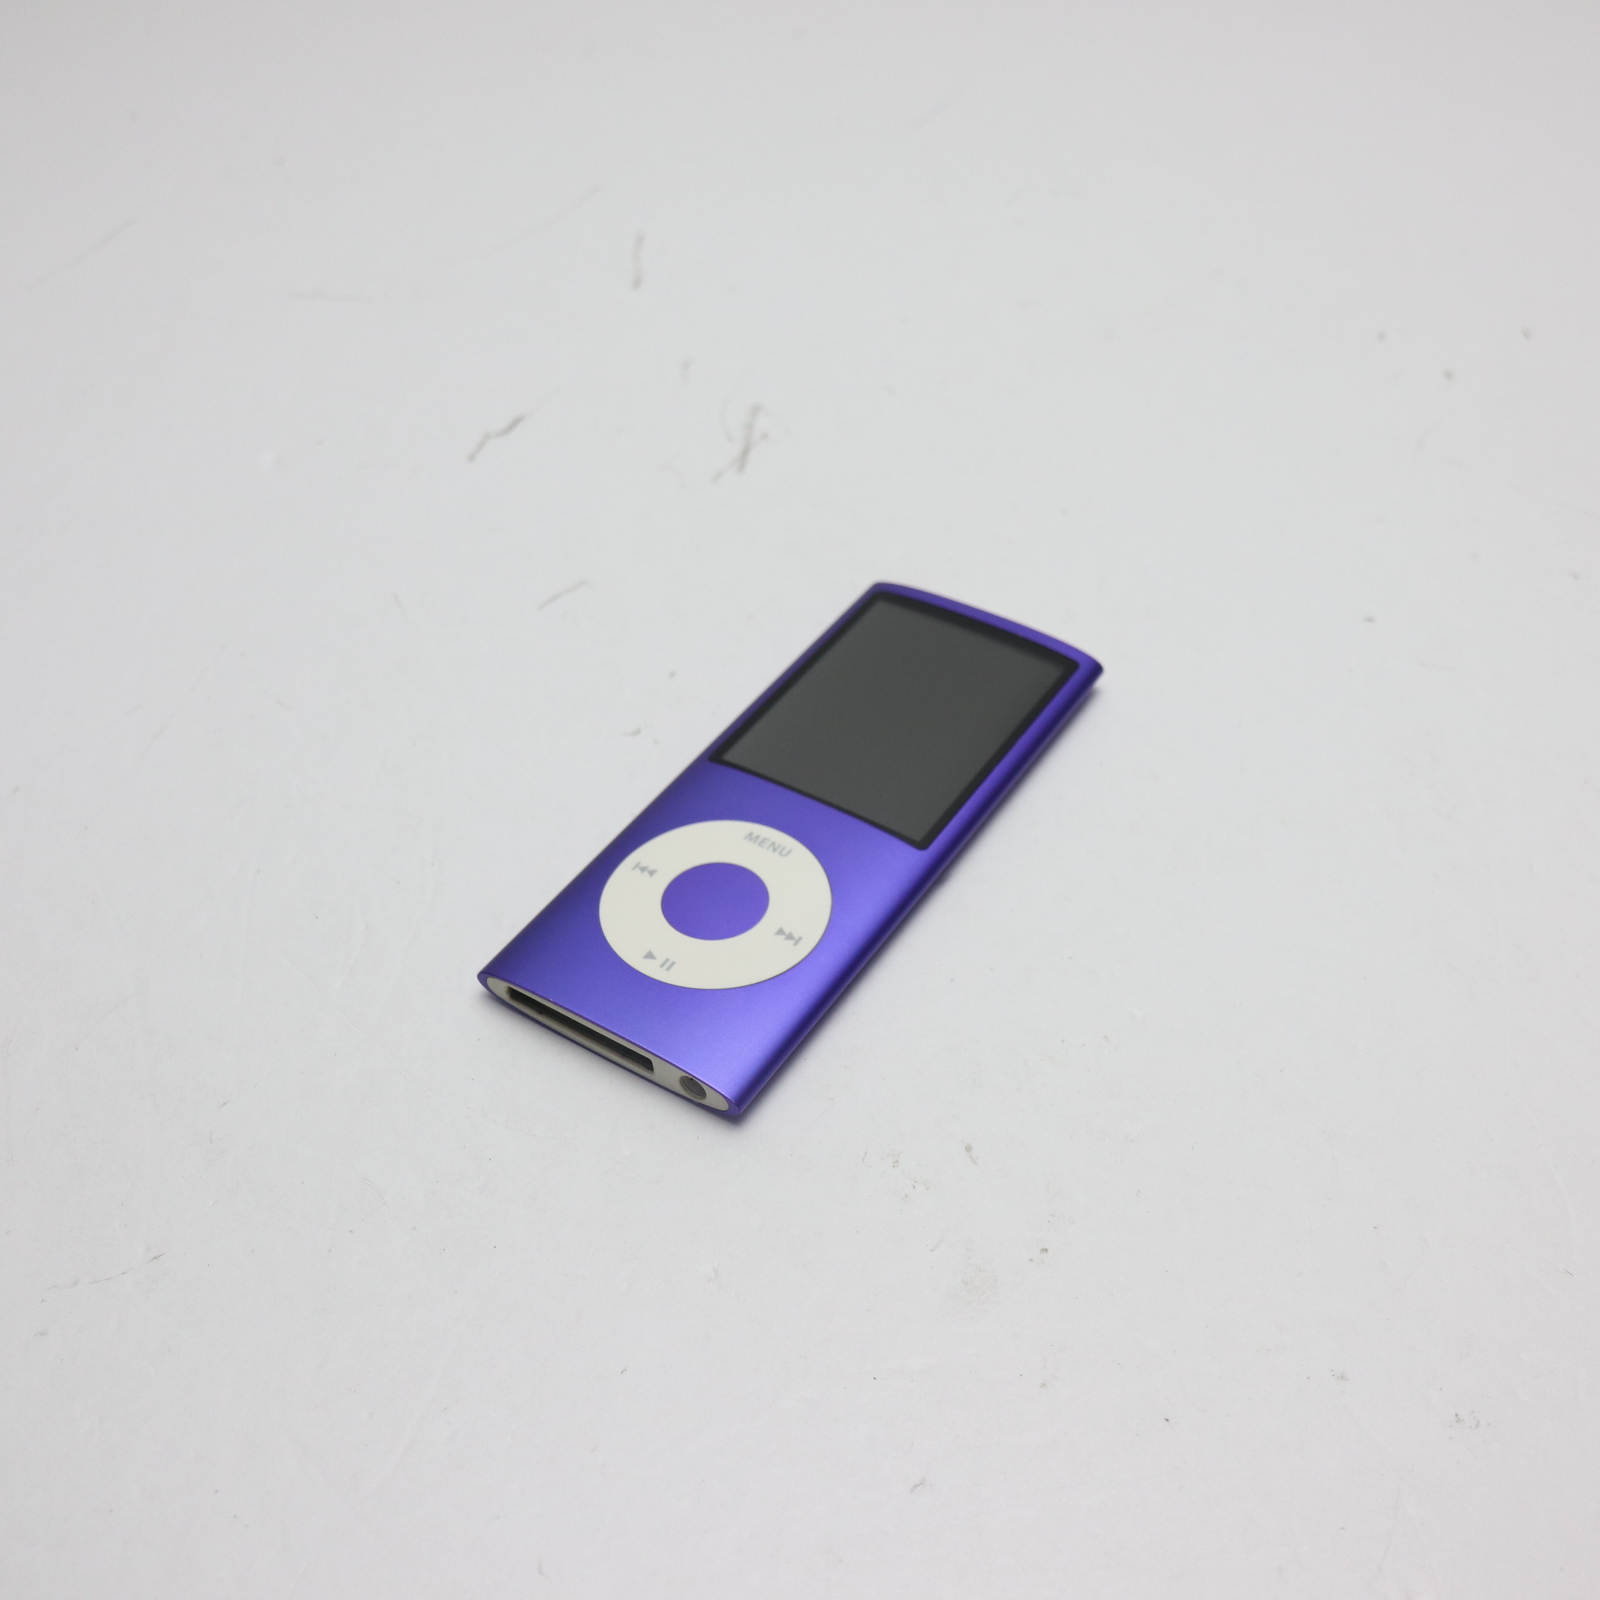 アップル iPod Nano 8GB MB739J/A デジタルオーディオプレーヤーの商品画像